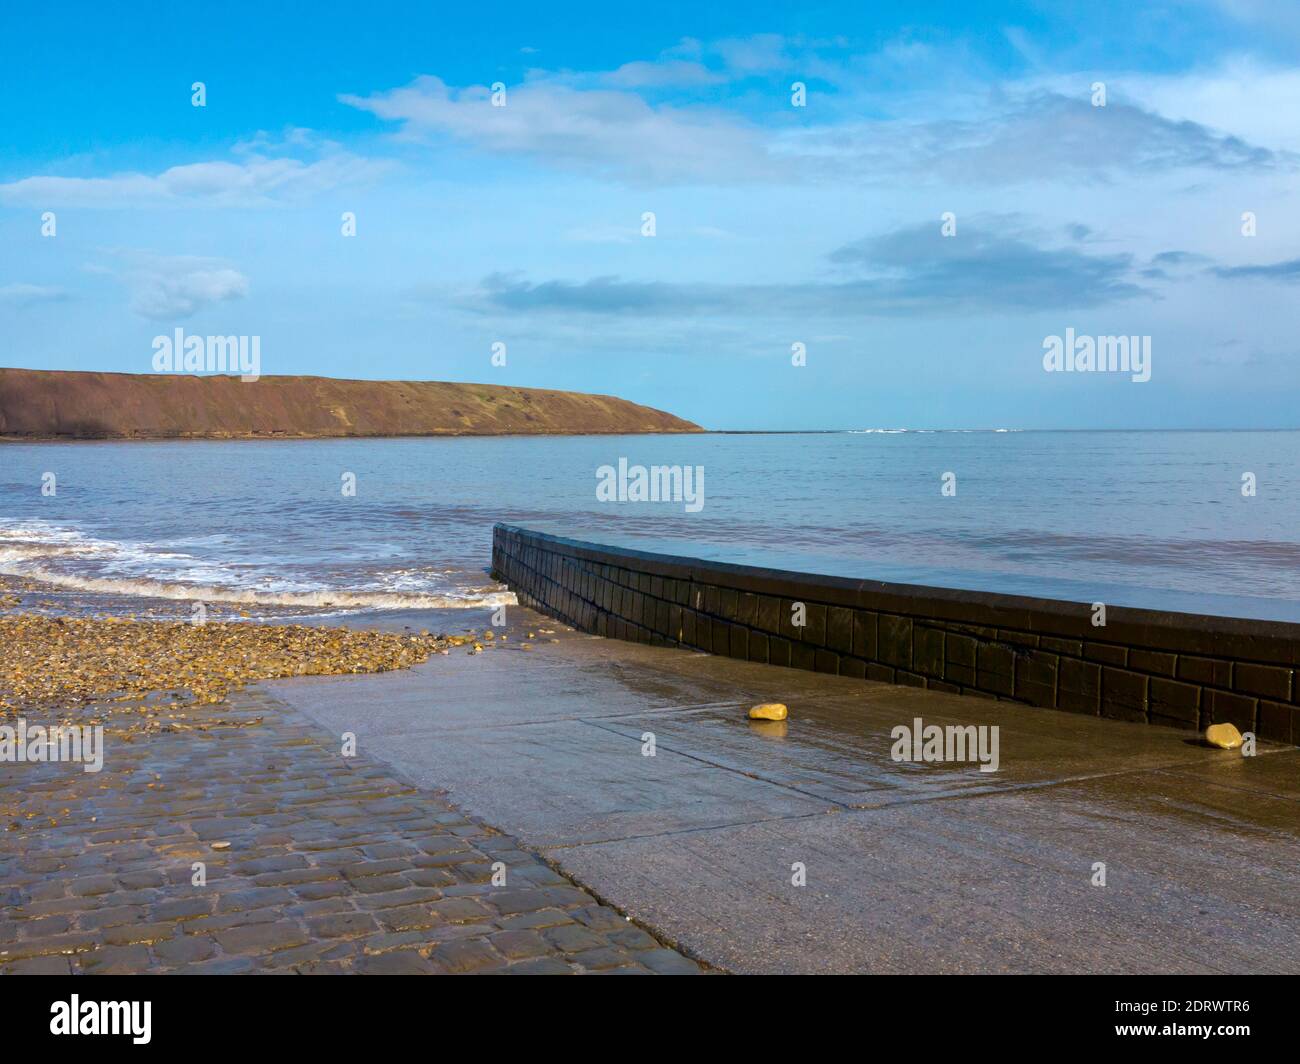 Wellen und die Promenade bei Flut am Strand In Filey ein beliebter Badeort im Norden von Yorkshire Küste in Nordengland Großbritannien Stockfoto